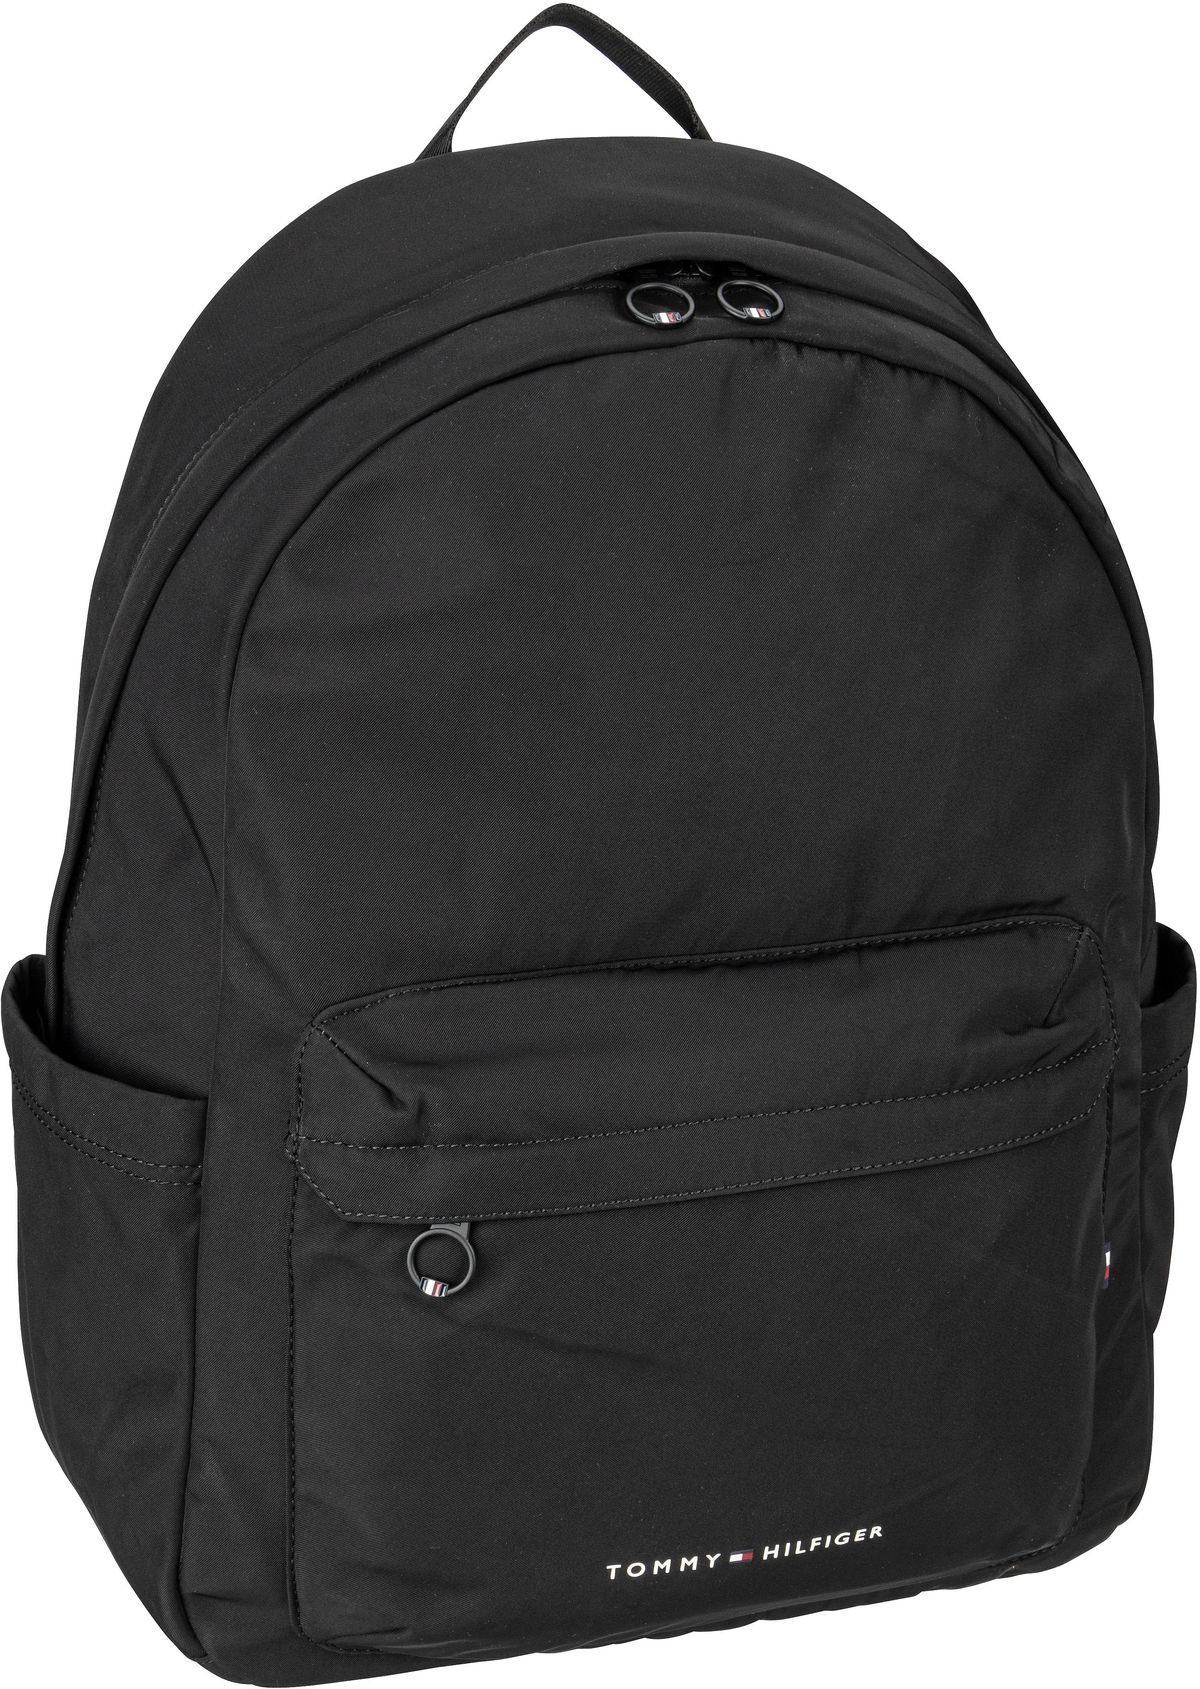 Tommy Hilfiger Tommy Hilfiger TH Skyline Backpack PSP24 in Schwarz (14.3 Liter), Rucksack / Backpack